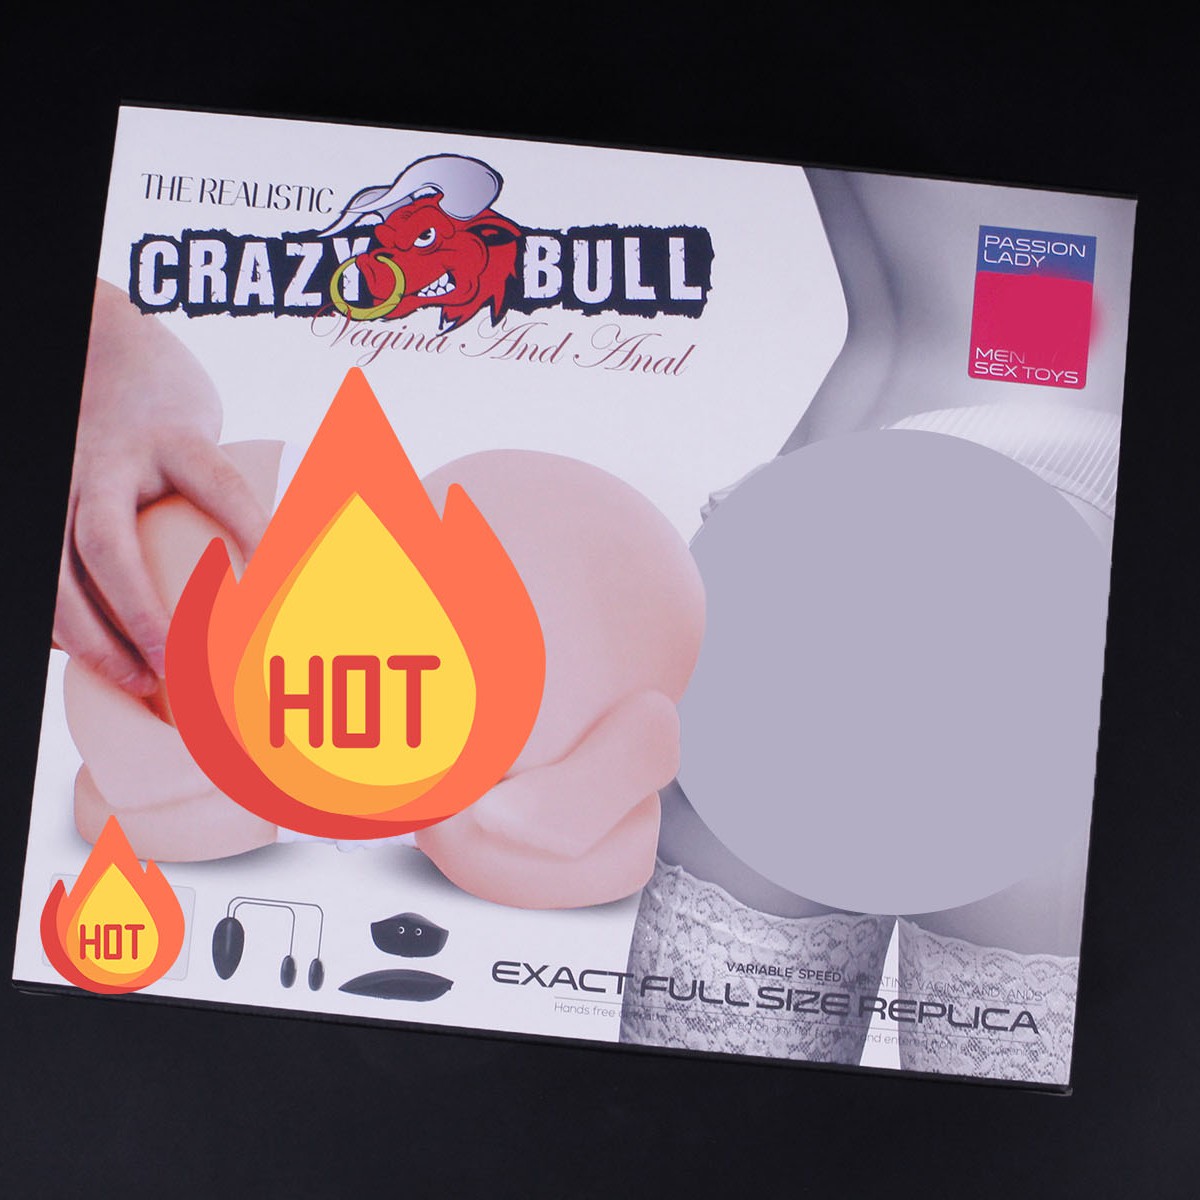 Âm mới 100% Crazy Bull A9115 - thanh lý bỏ mẫu có hạn